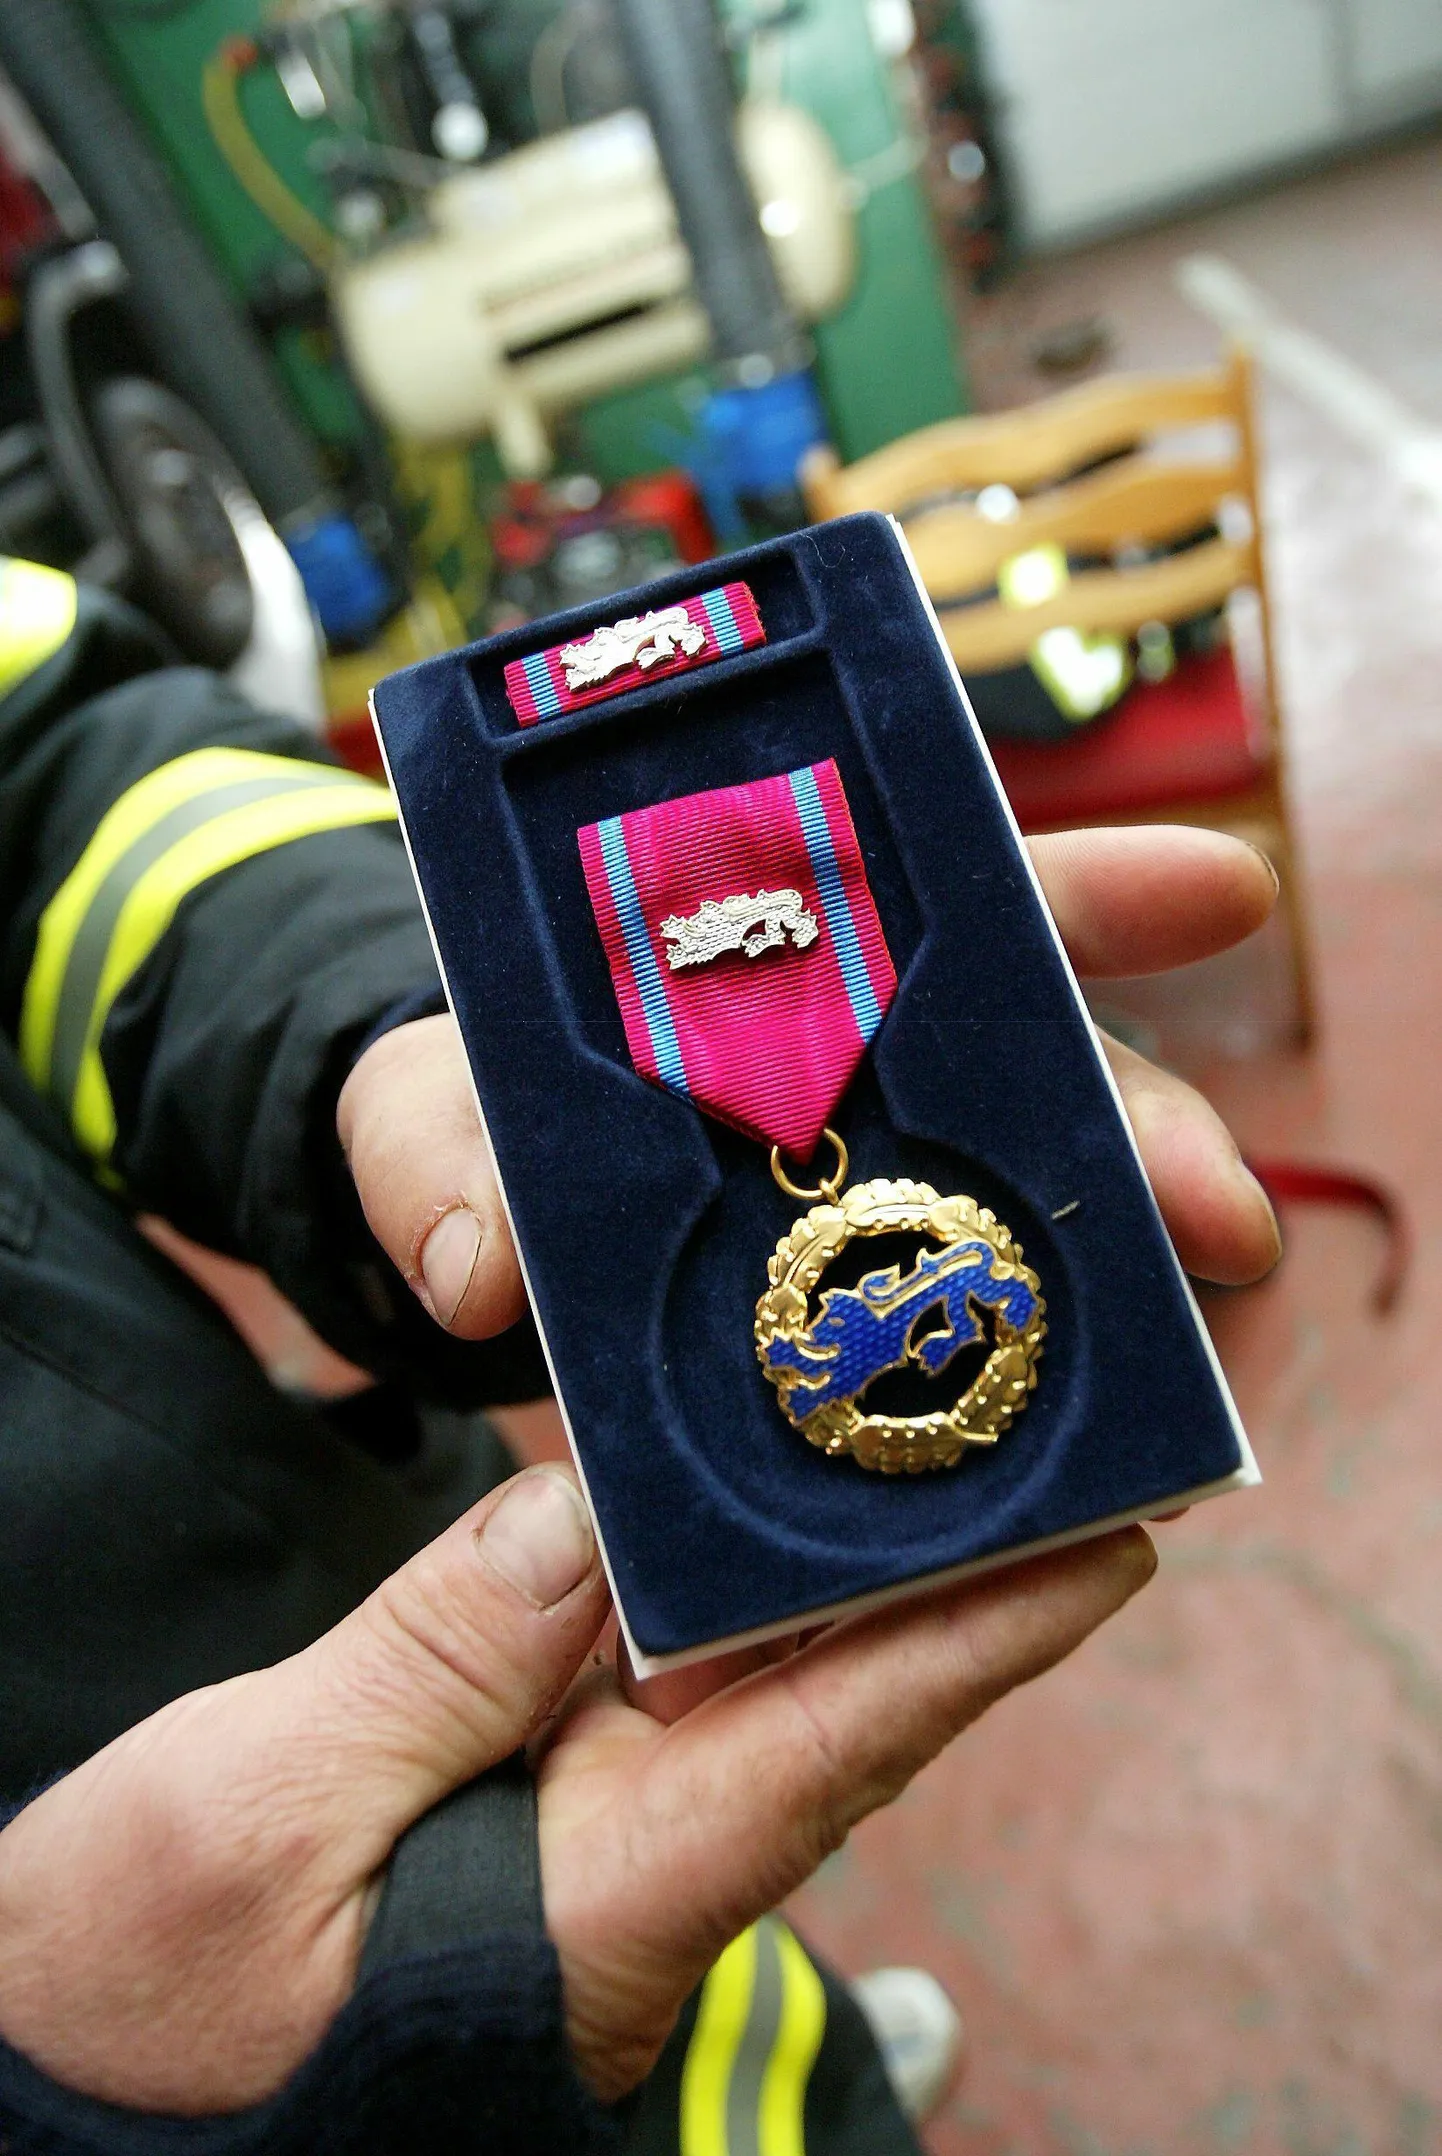 Elupäästja medali annab siseminister tunnustuseks inimese elu päästmisel ilmutatud vapruse ja kangelaslikkuse eest. Medaleid antakse välja kord aastas, organiseeritud tuletõrje aastapäeval.